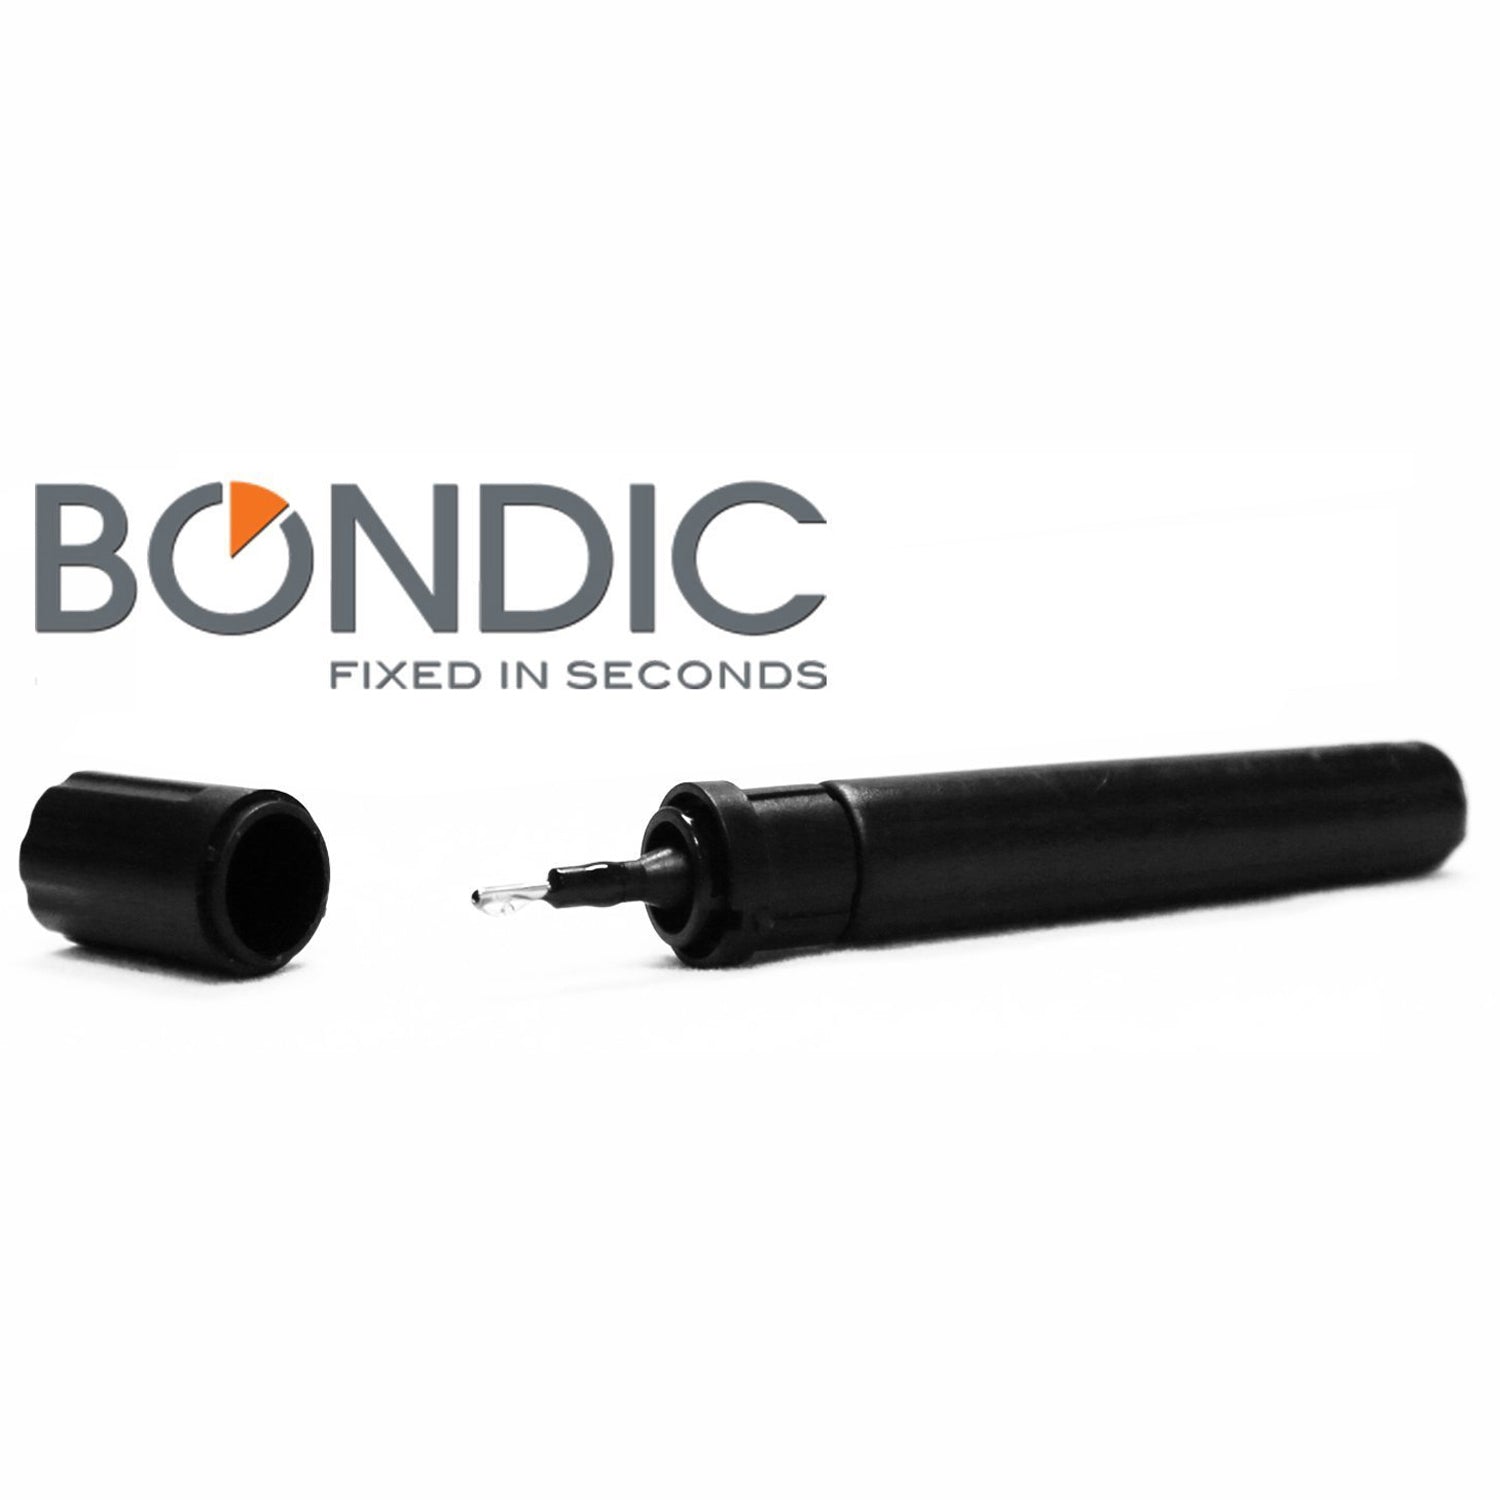 Bondic Plastic Welder Refill Tube - DY210378-1, Bondic